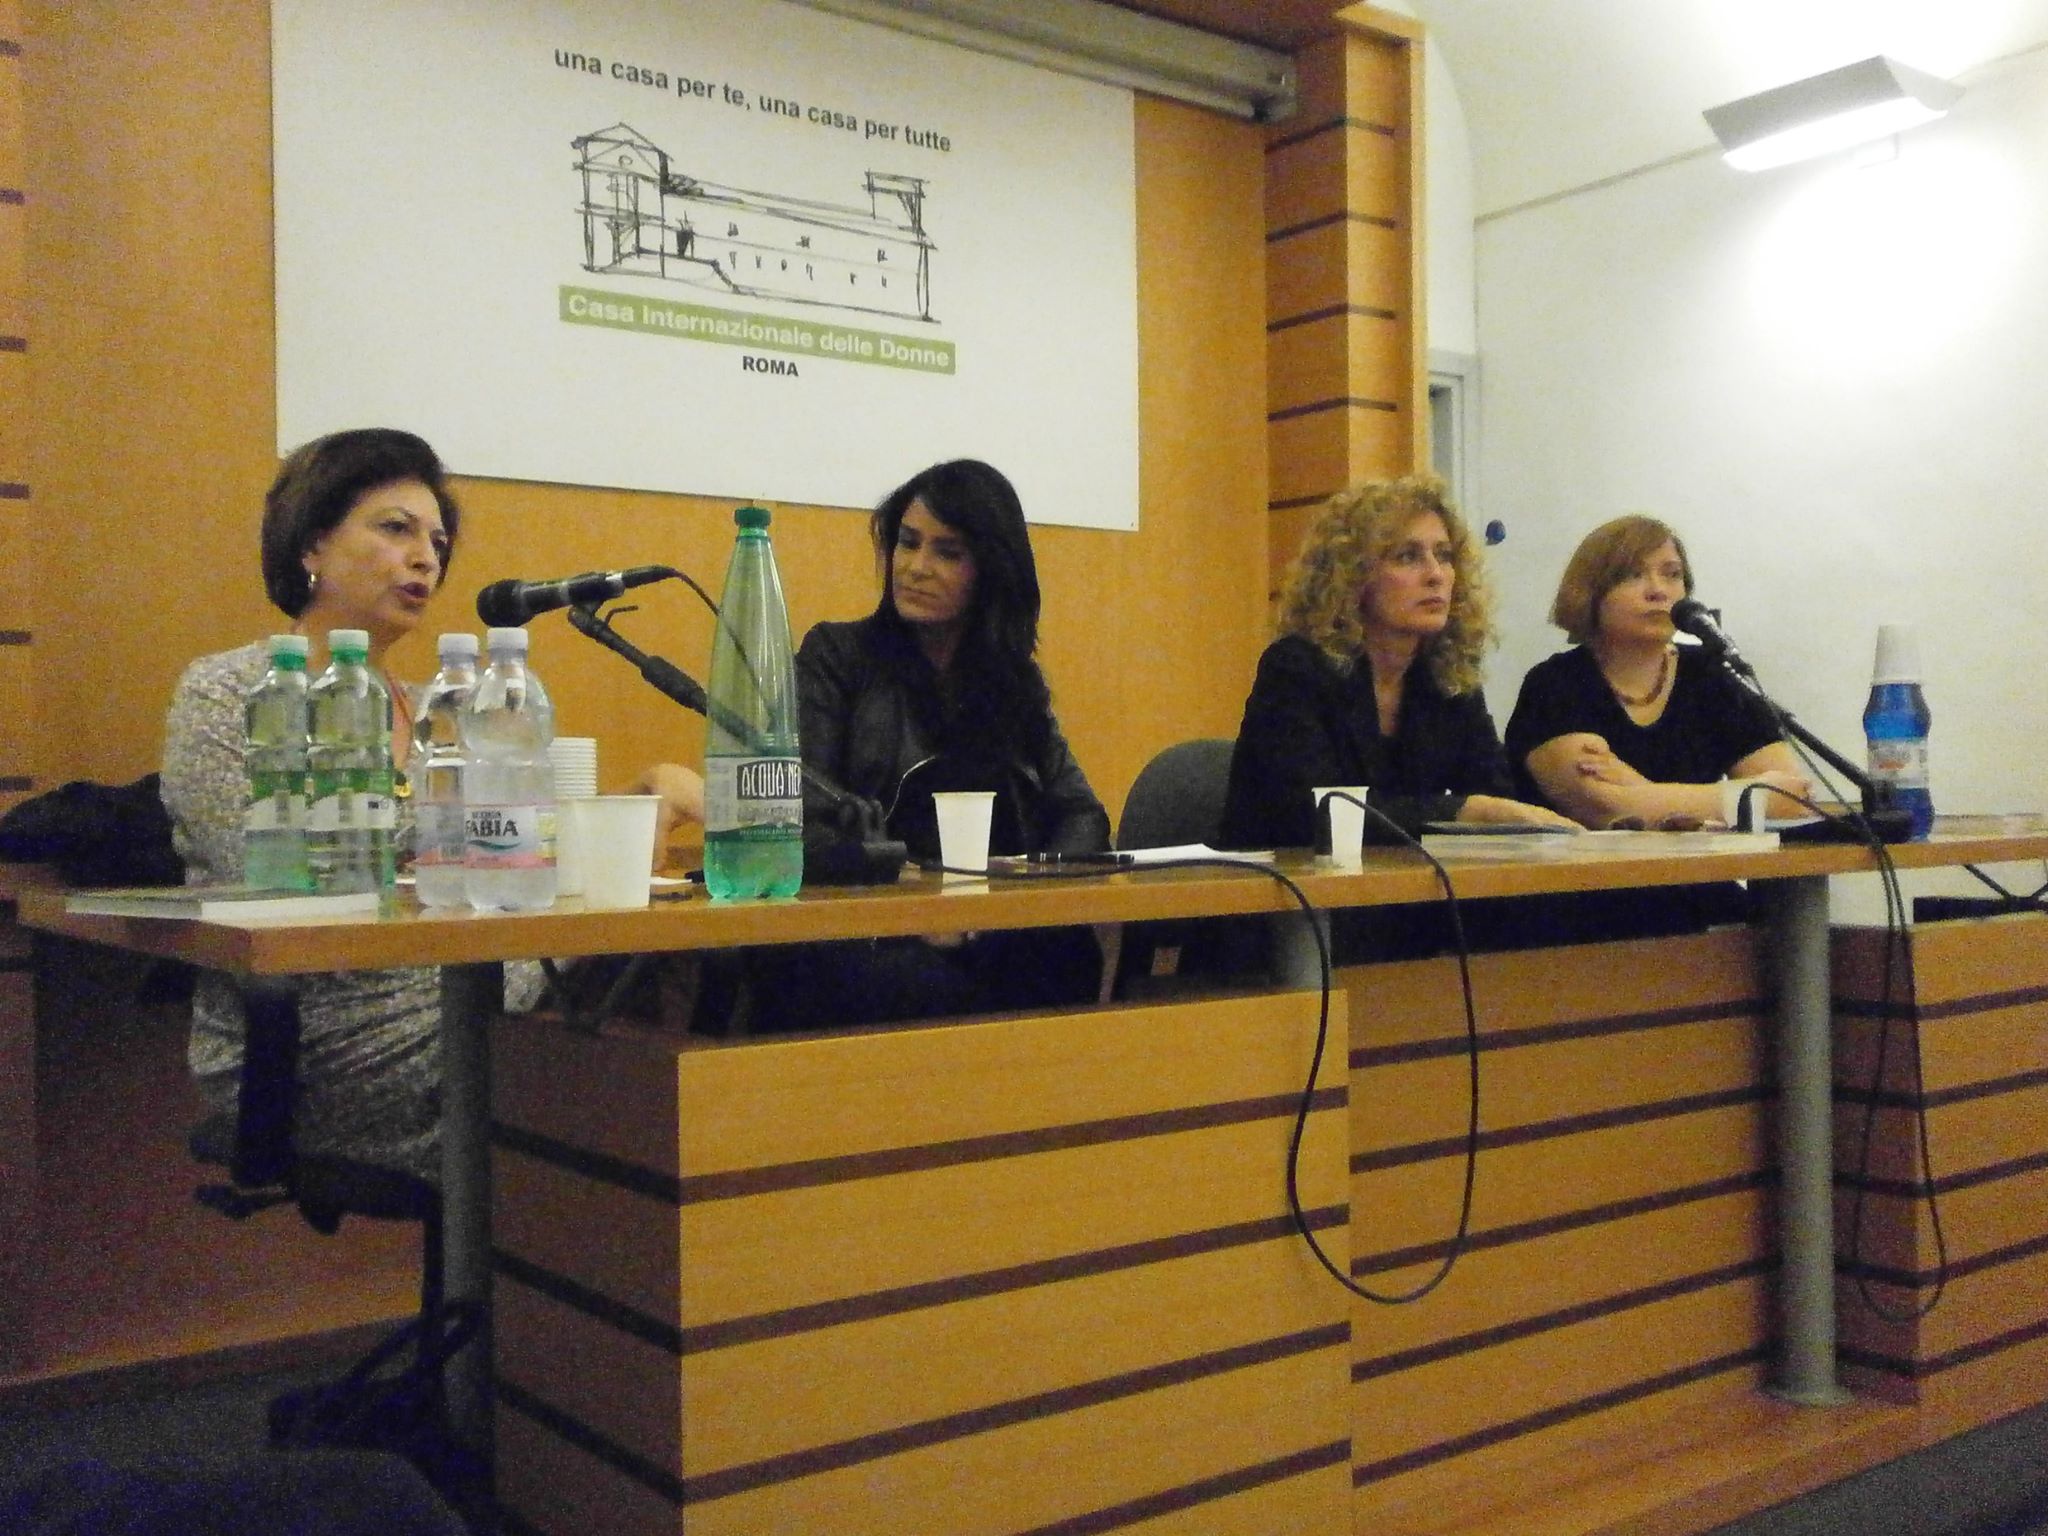 Presentazione dei "Demoni dell'Eden" di Lydia Cacho (Fandango Libri) alla Casa Internazionale delle donne di Roma. Da sx Loretta Bondì, Lydia Cacho, Luisa Betti, Barbara Spinelli.